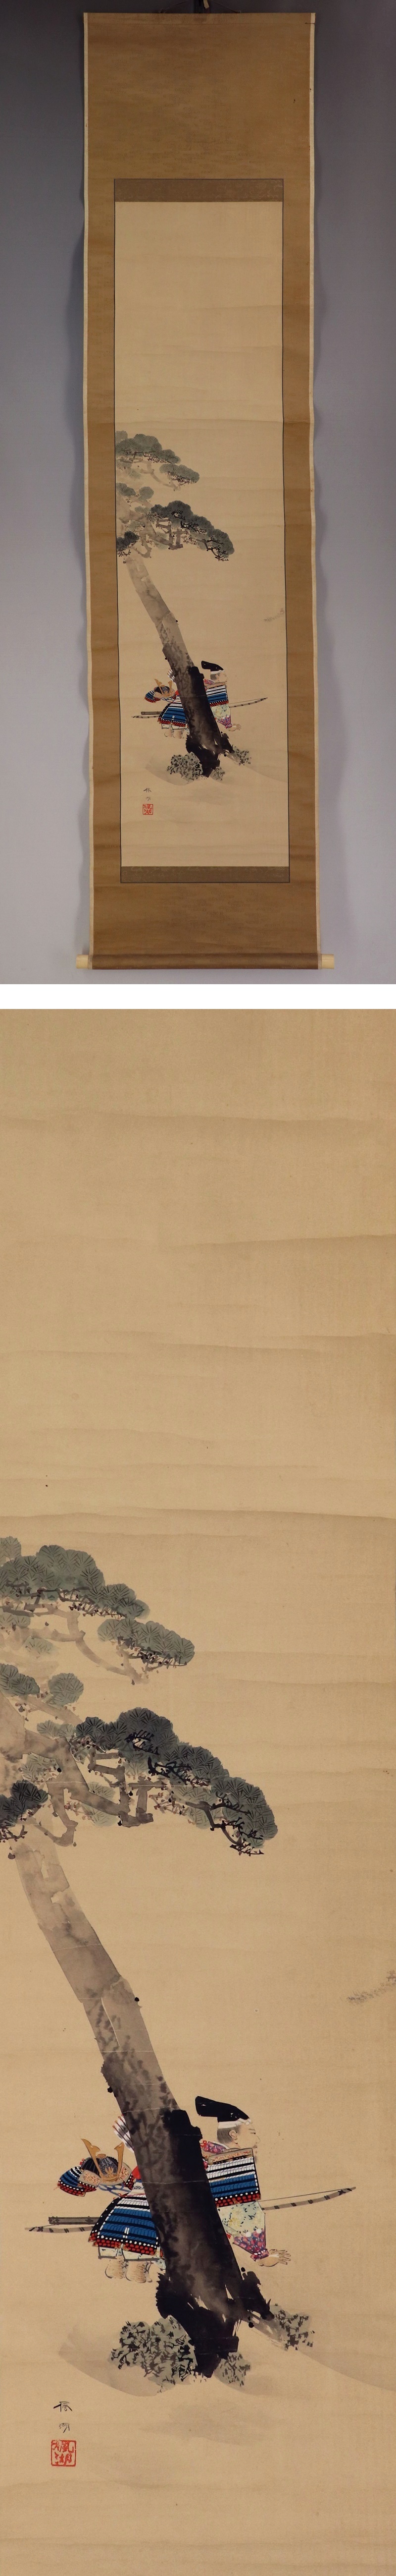 人気日本製908) 帰山雲涯(良徹) 日本画 「楠公父子之図」 軸 箱付 真作/(三条帰山阡蒼花鳥画茶道具茶の湯人物) 人物、菩薩